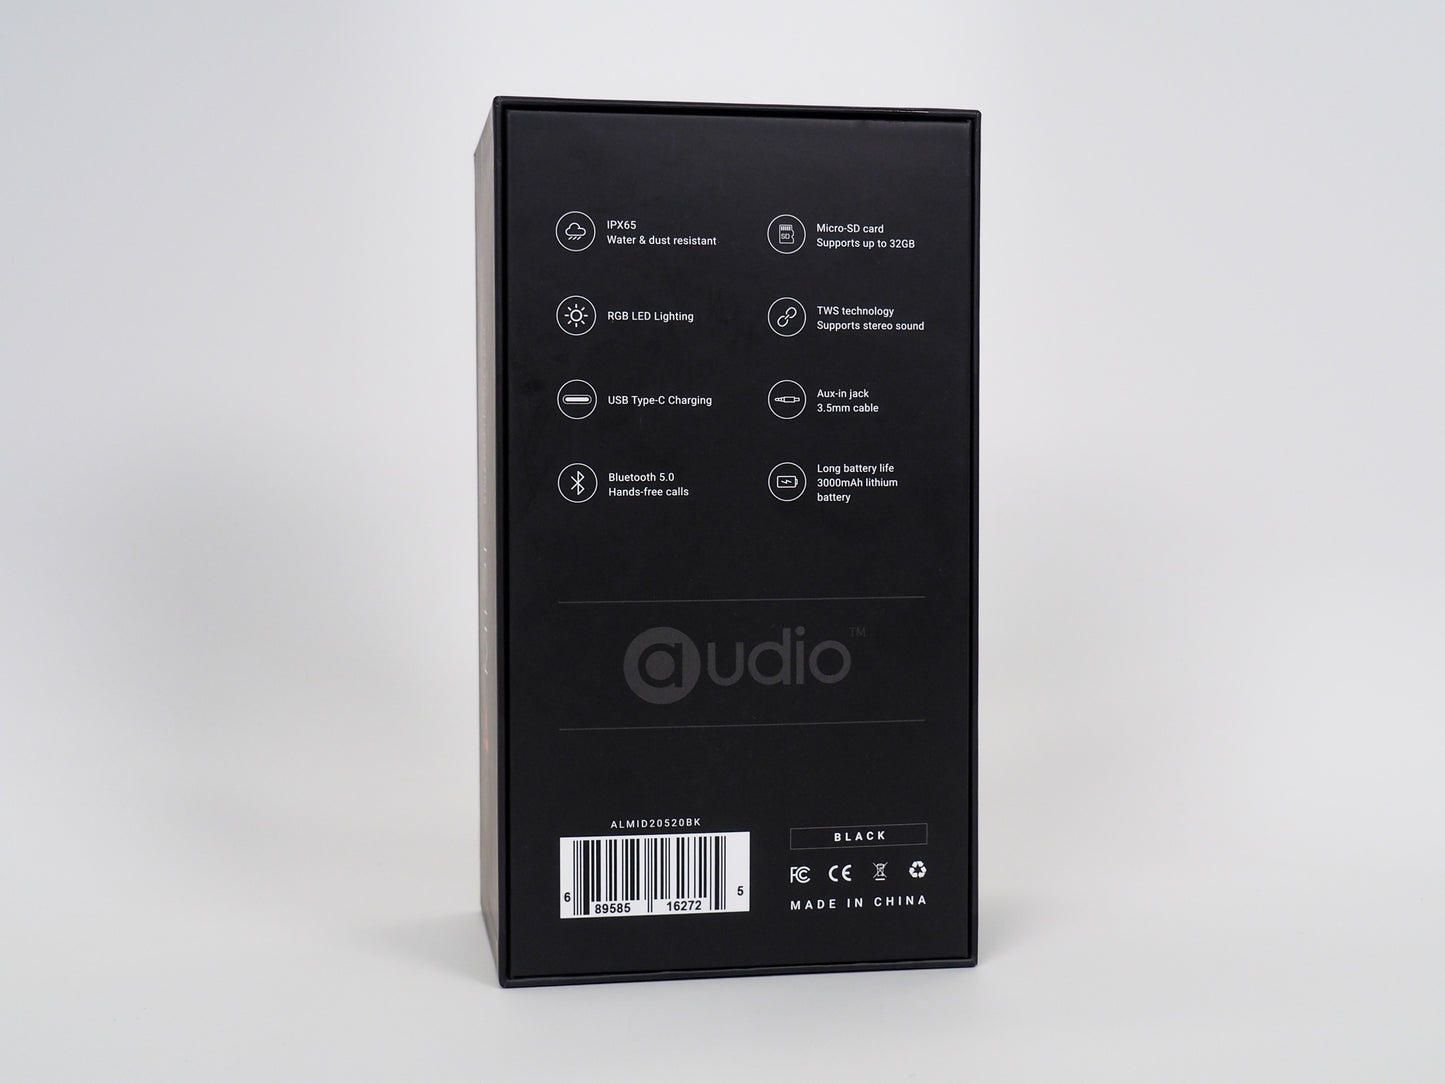 MIDI2 Bluetooth Speaker